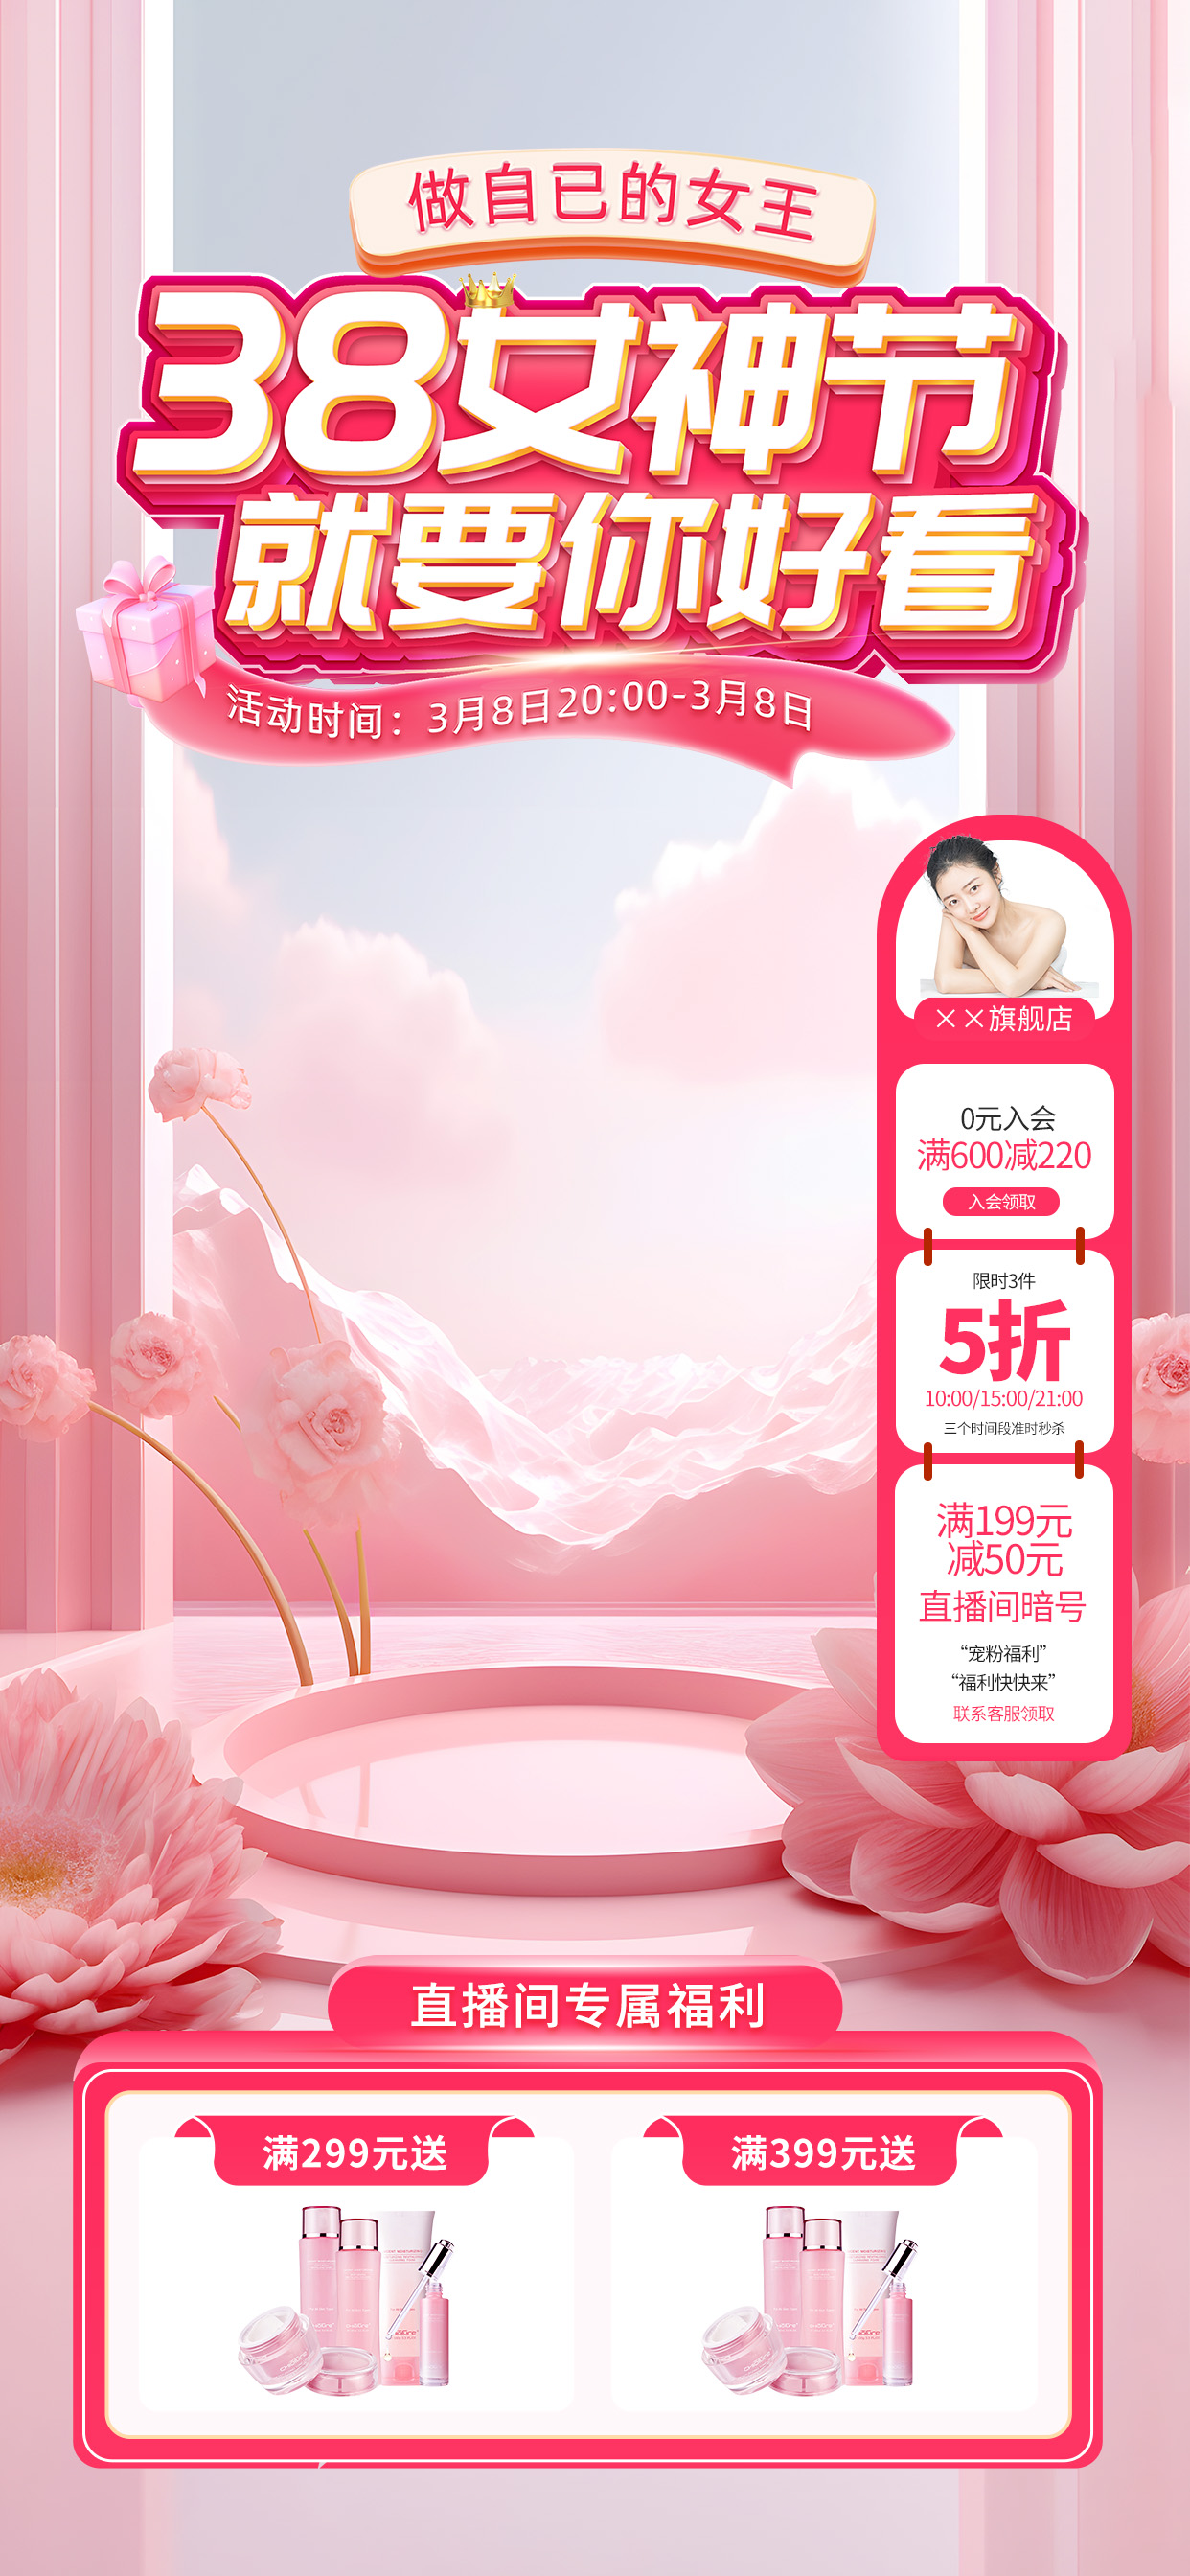 三八女神节贴片直播间背景粉色立体长图海报海报素材图片